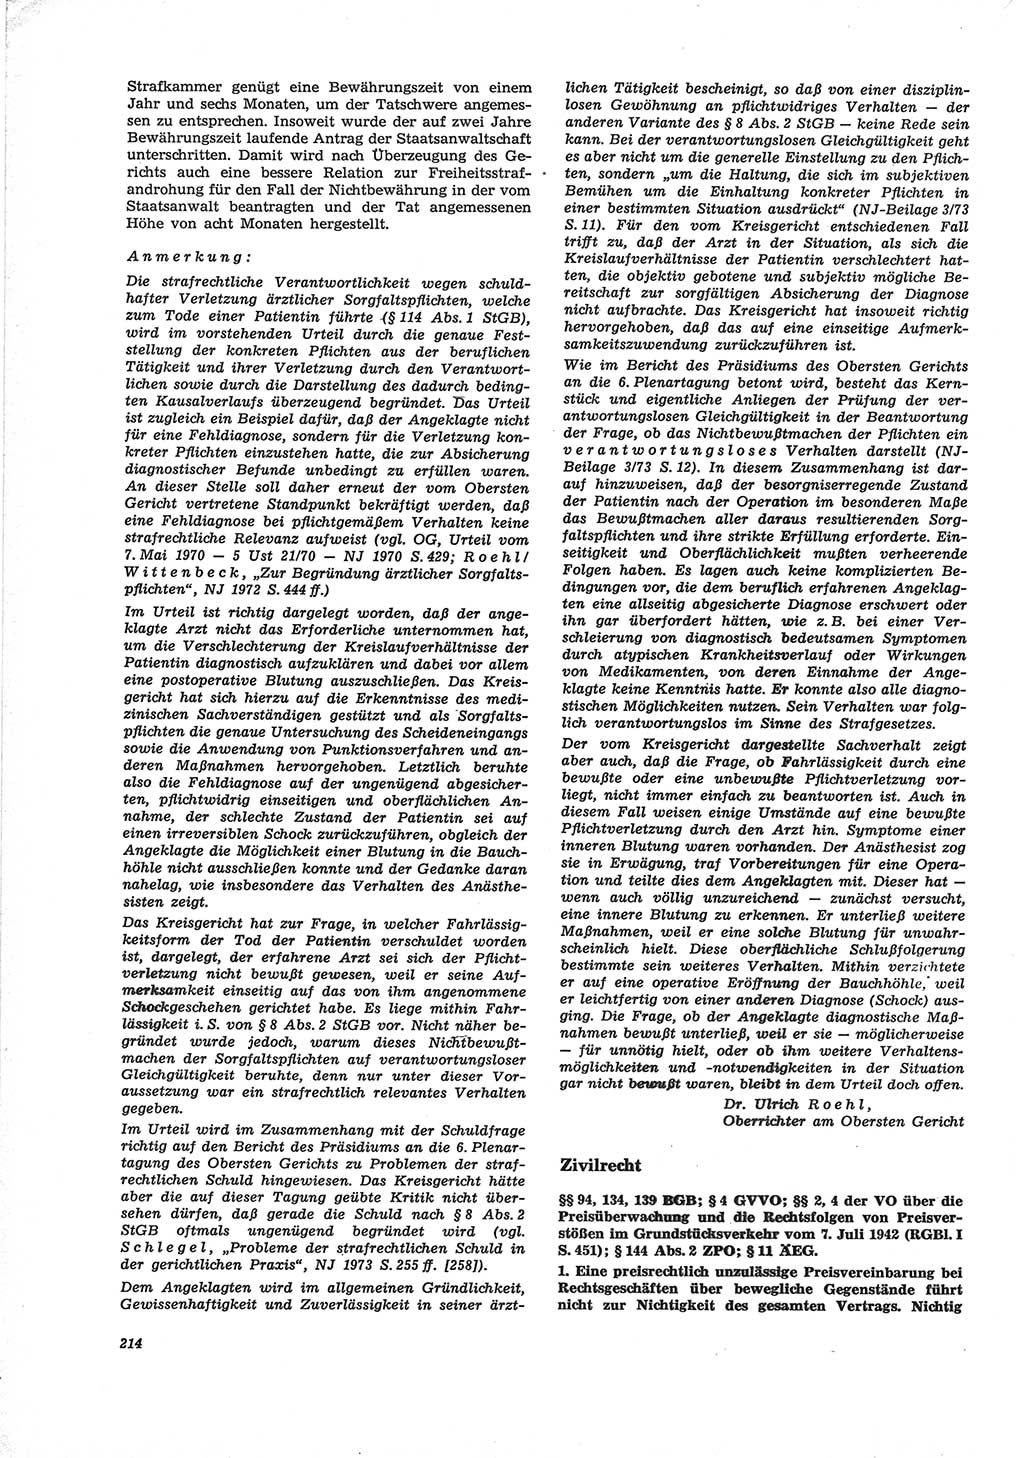 Neue Justiz (NJ), Zeitschrift für Recht und Rechtswissenschaft [Deutsche Demokratische Republik (DDR)], 28. Jahrgang 1974, Seite 214 (NJ DDR 1974, S. 214)